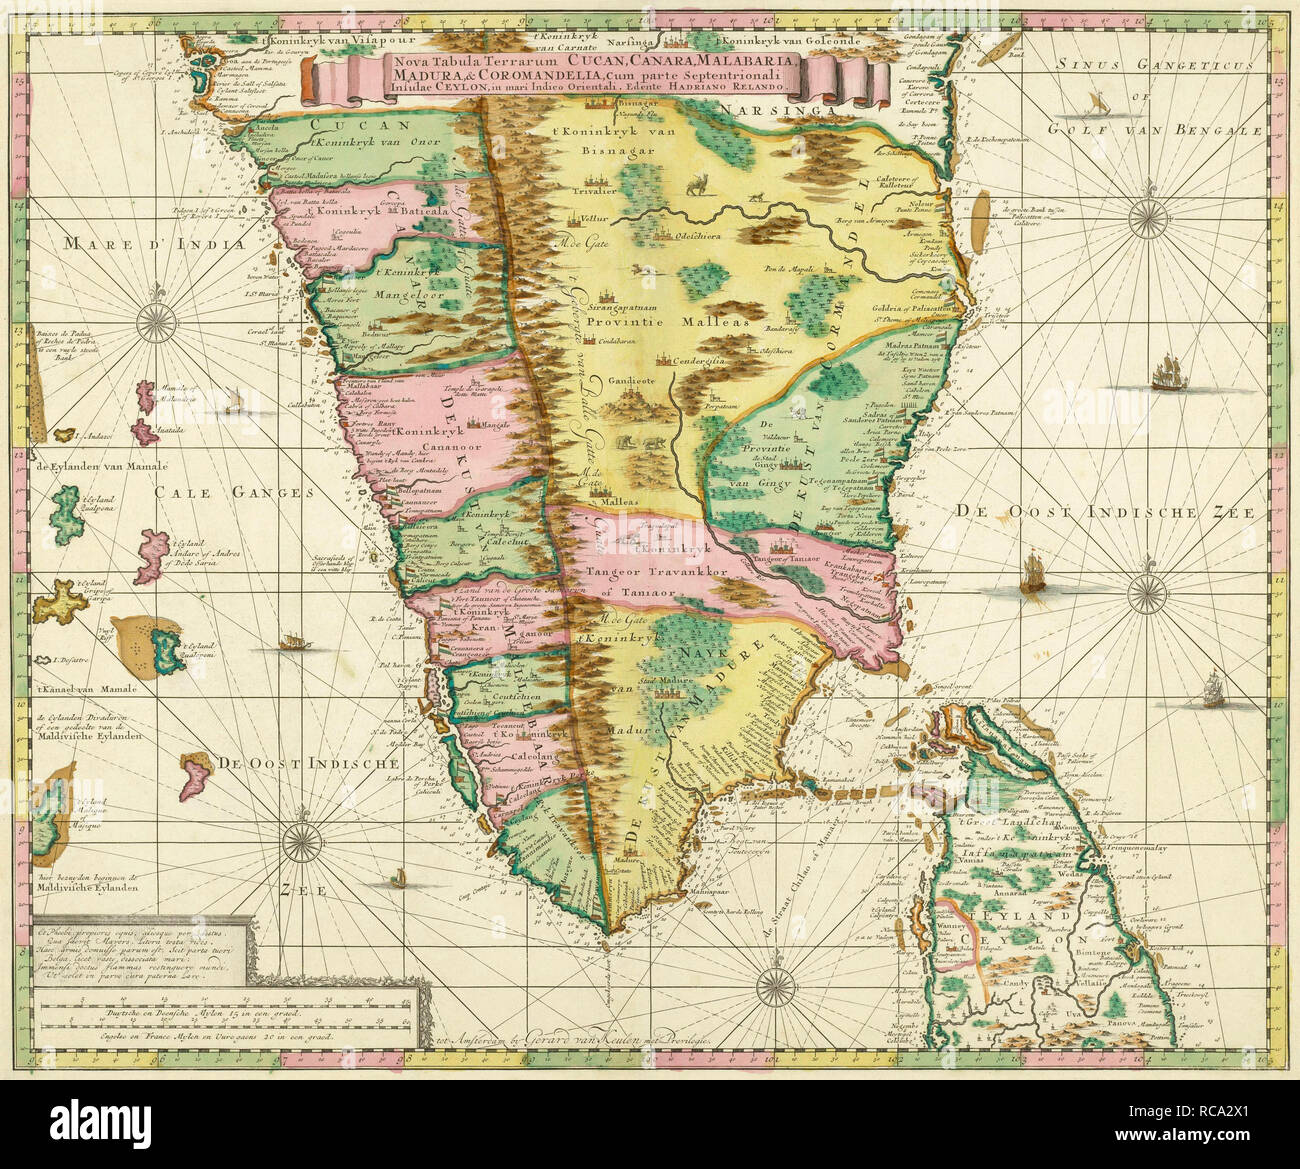 Mappa di India Meridionale e Ceylon, dopo un lavoro fatto circa 1720 dal cartografo olandese Adriaan Reland. Adam's ponte tra le due nazioni è chiaramente contrassegnati. Foto Stock